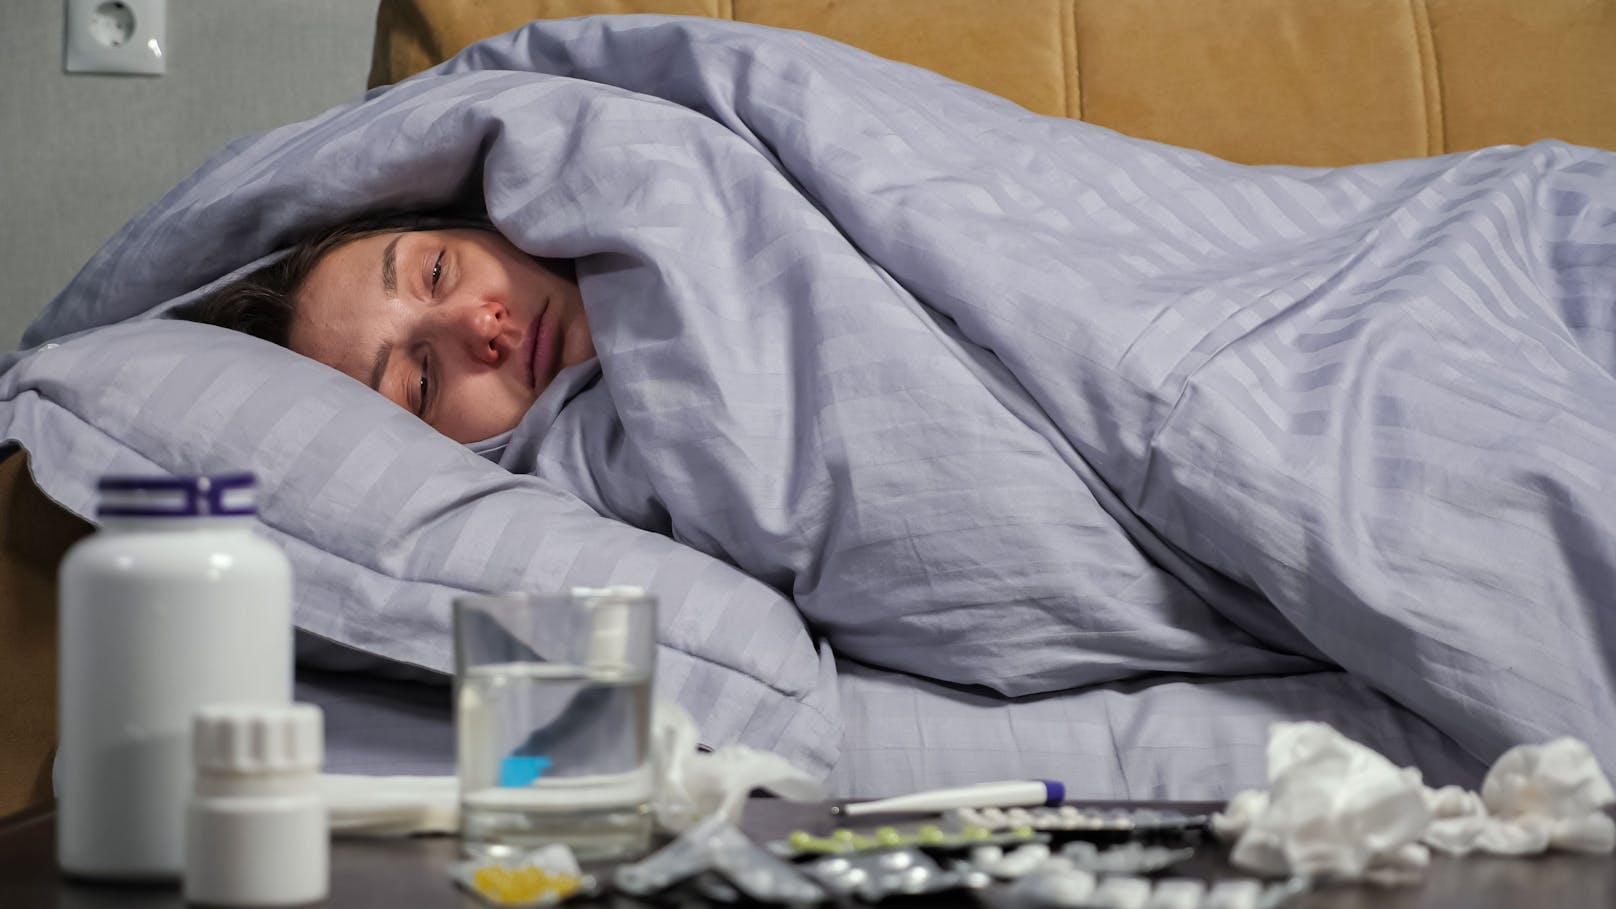 224.000 Krankenstände – deshalb liegen so viele im Bett